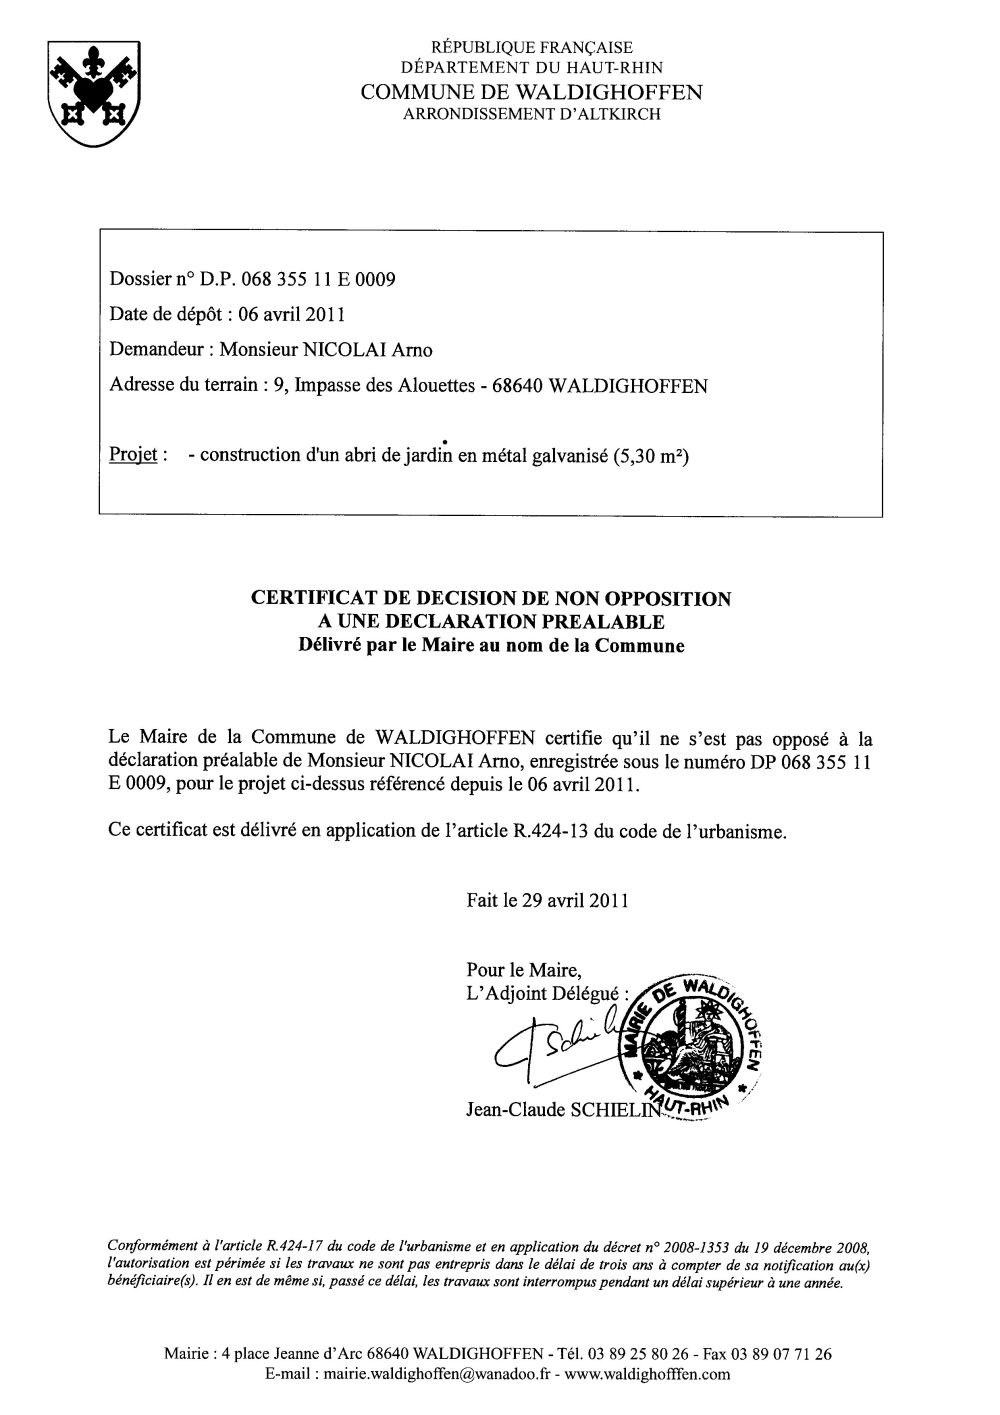 Non-opposition à une déclaration préalable n°11E0009 - M. NICOLAI